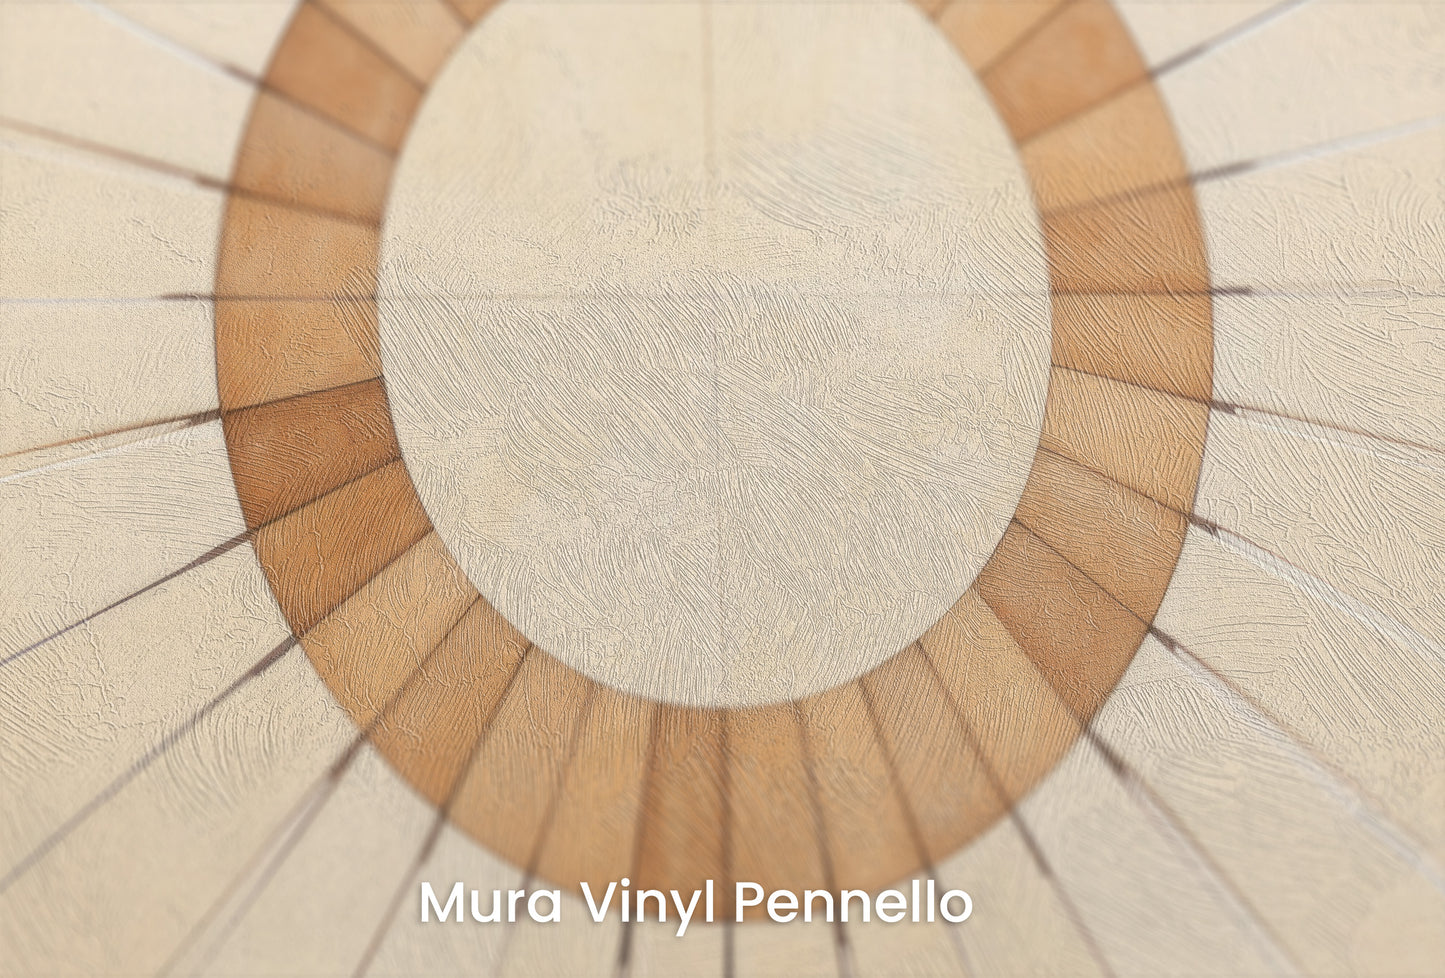 Zbliżenie na artystyczną fototapetę o nazwie SUNBURST OVAL MOSAIC na podłożu Mura Vinyl Pennello - faktura pociągnięć pędzla malarskiego.